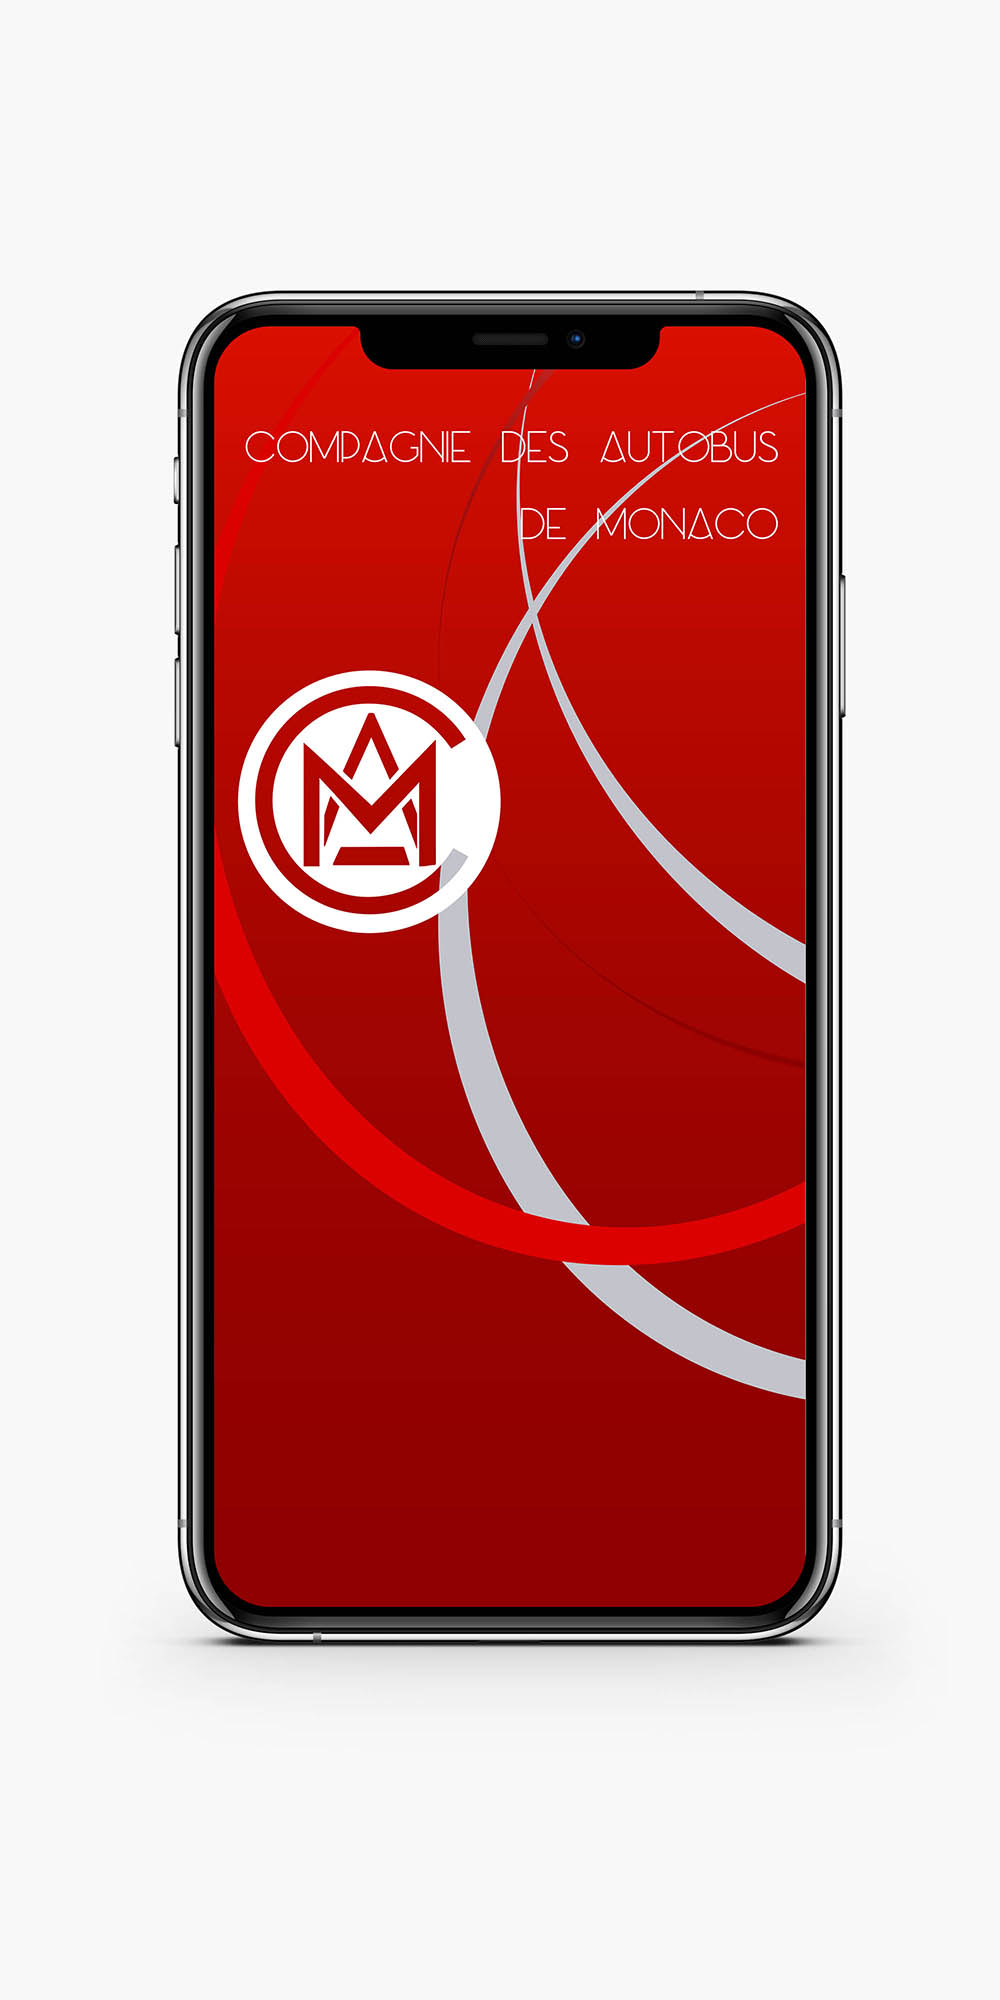 monaco bus app